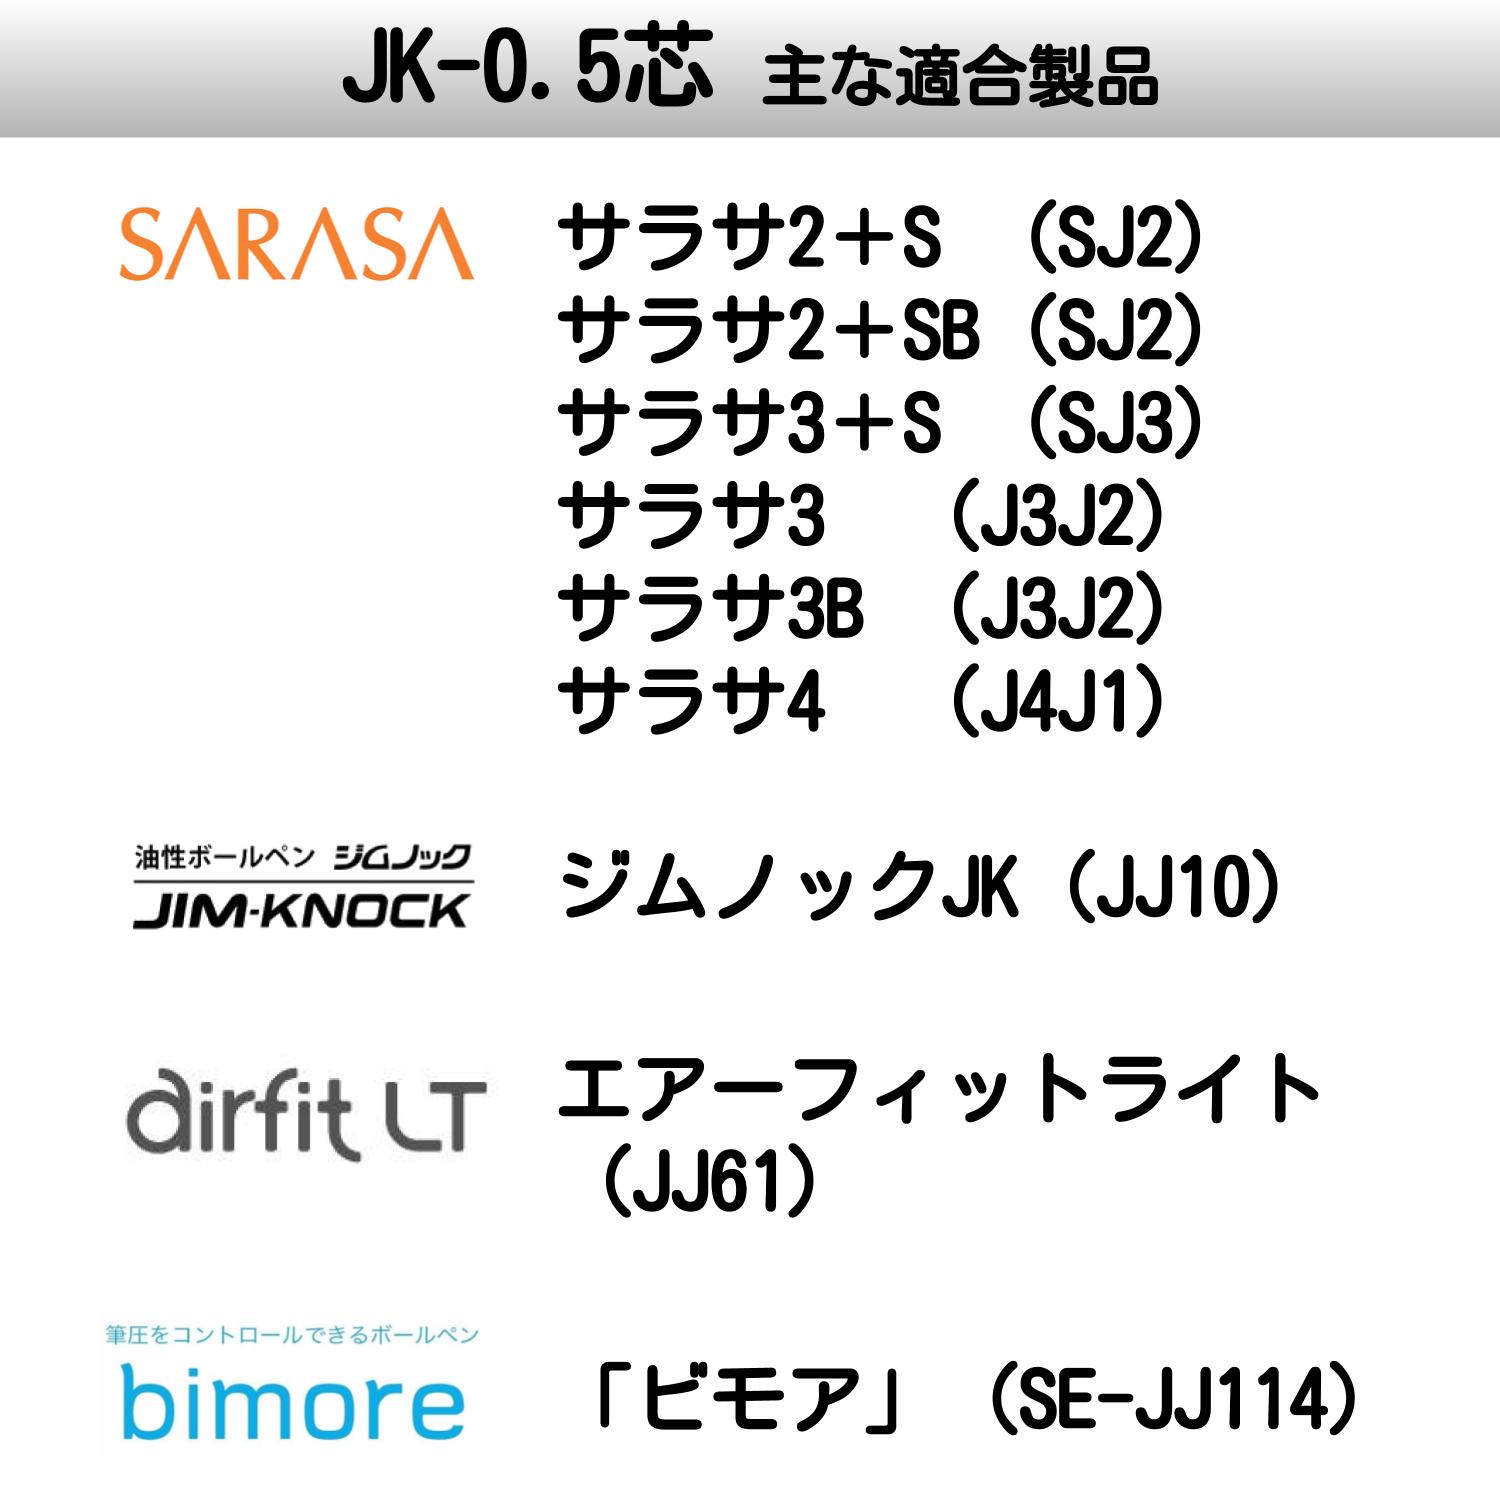 JK-0.5芯 サラサ3 サラサ4 サラサ2 よりどり選べる10本セット ジェル ボールペン替え芯 替芯 0.5mm 黒 赤 青 緑 RJK-BK RJK-BL RJK-R RJK-G ゼブラ SARASA3 ボールペン 芯 詰め替え 詰替 3